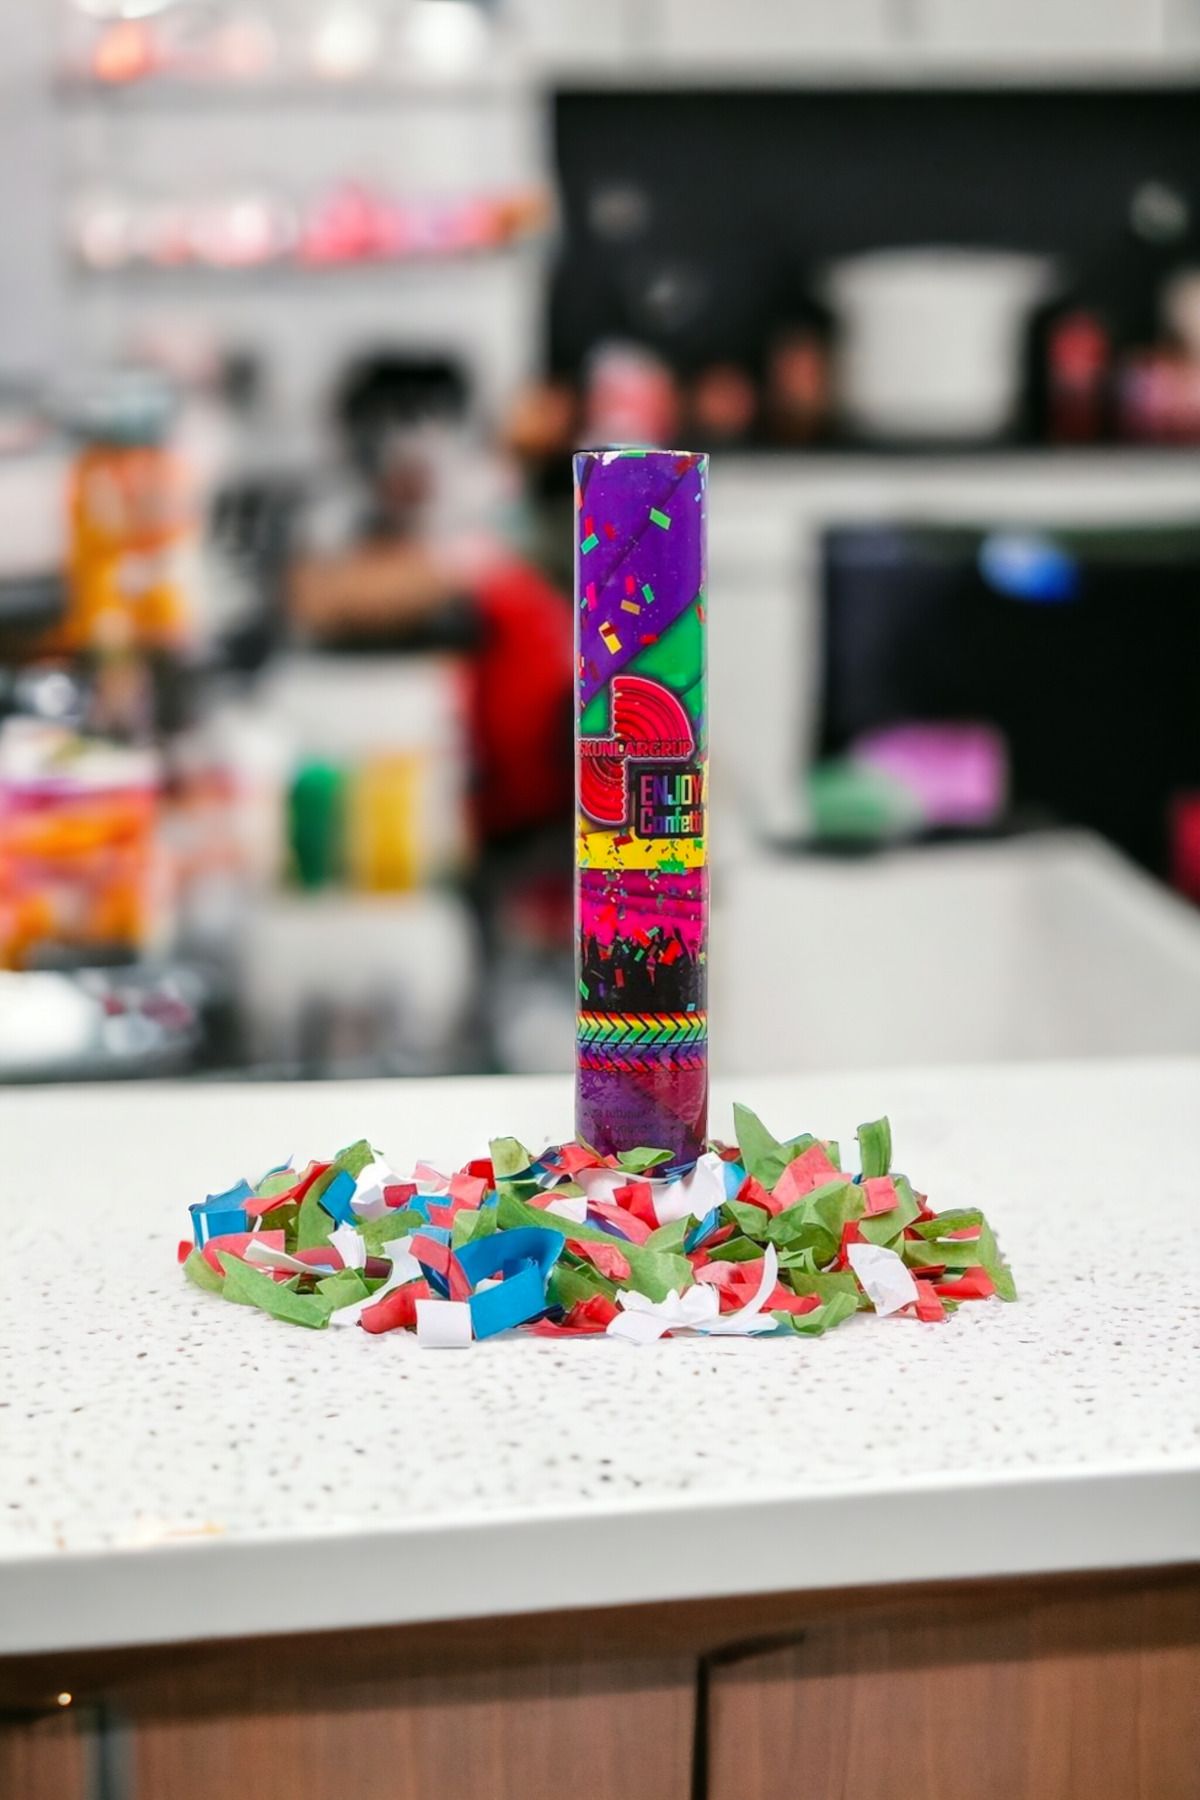 Enjoy Parti malzemeleri 30 cm karışık süs ve şerit fırlatan karışık renk konfeti süsleme ürünleri carnaval